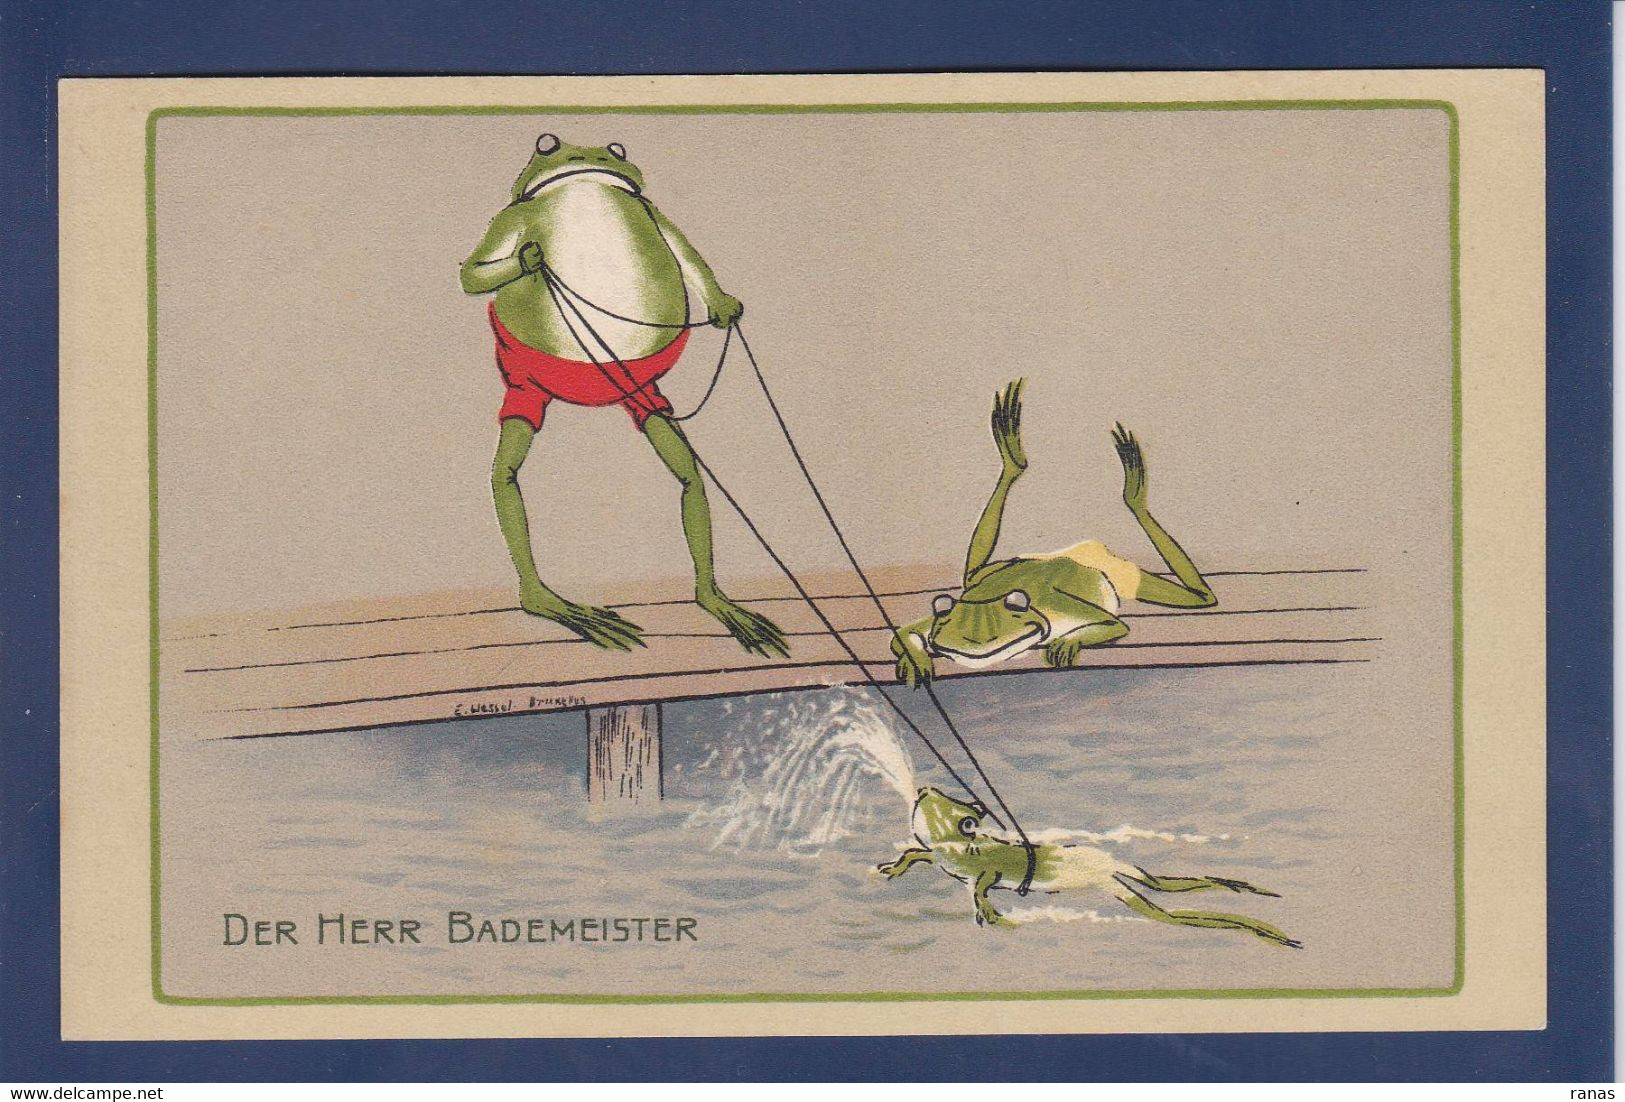 CPA Grenouille Frog Surréalisme Non Circulé Position Humaine Satirique Caricature - Fish & Shellfish